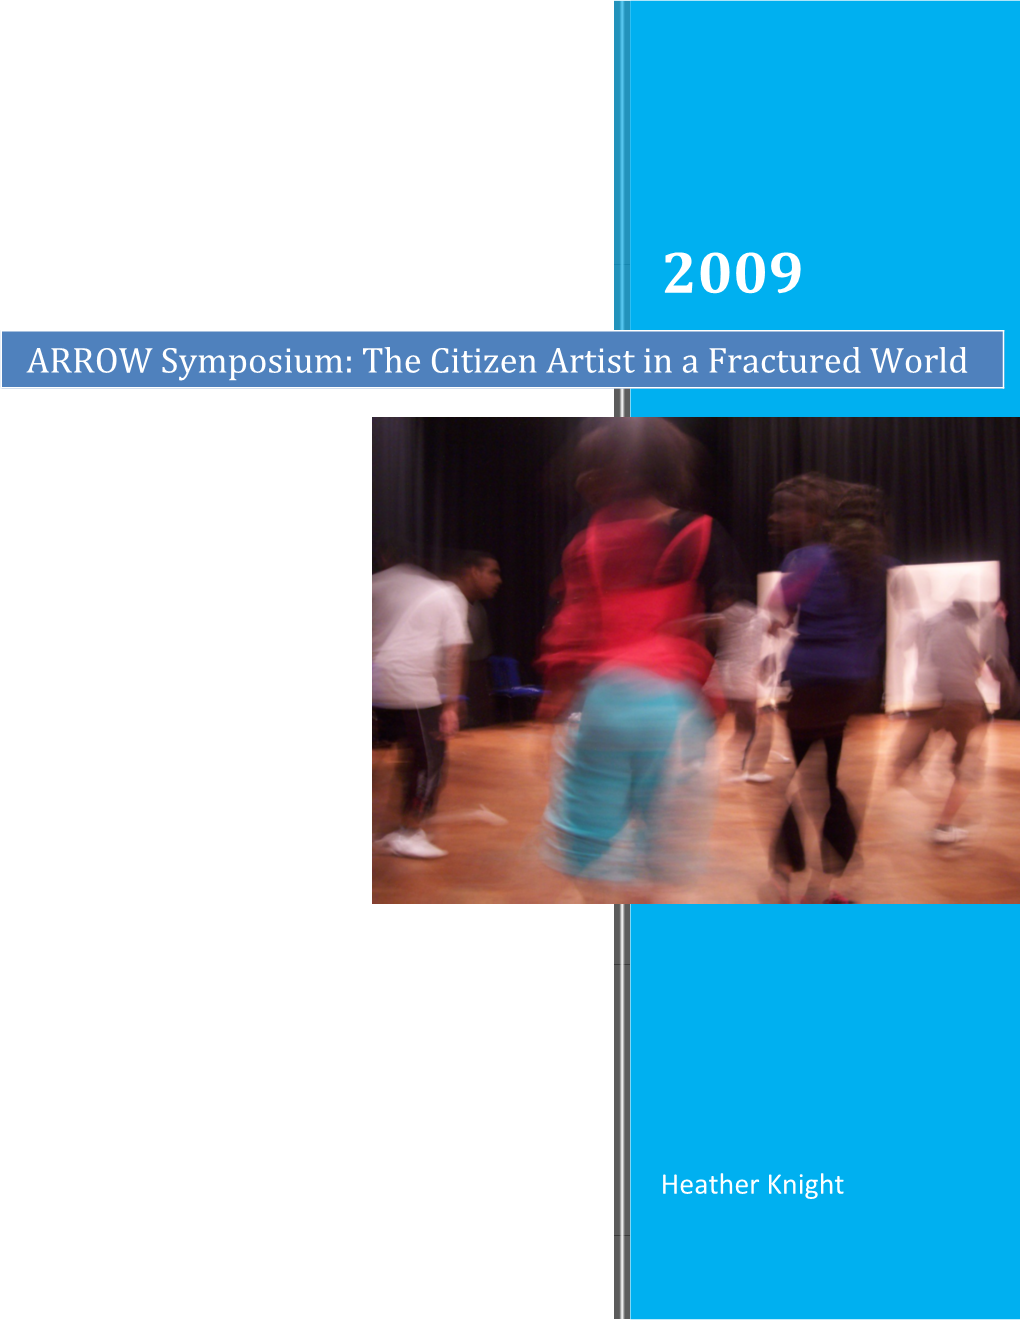 ARROW UK Symposium: Citizen Artist in a Fractured World